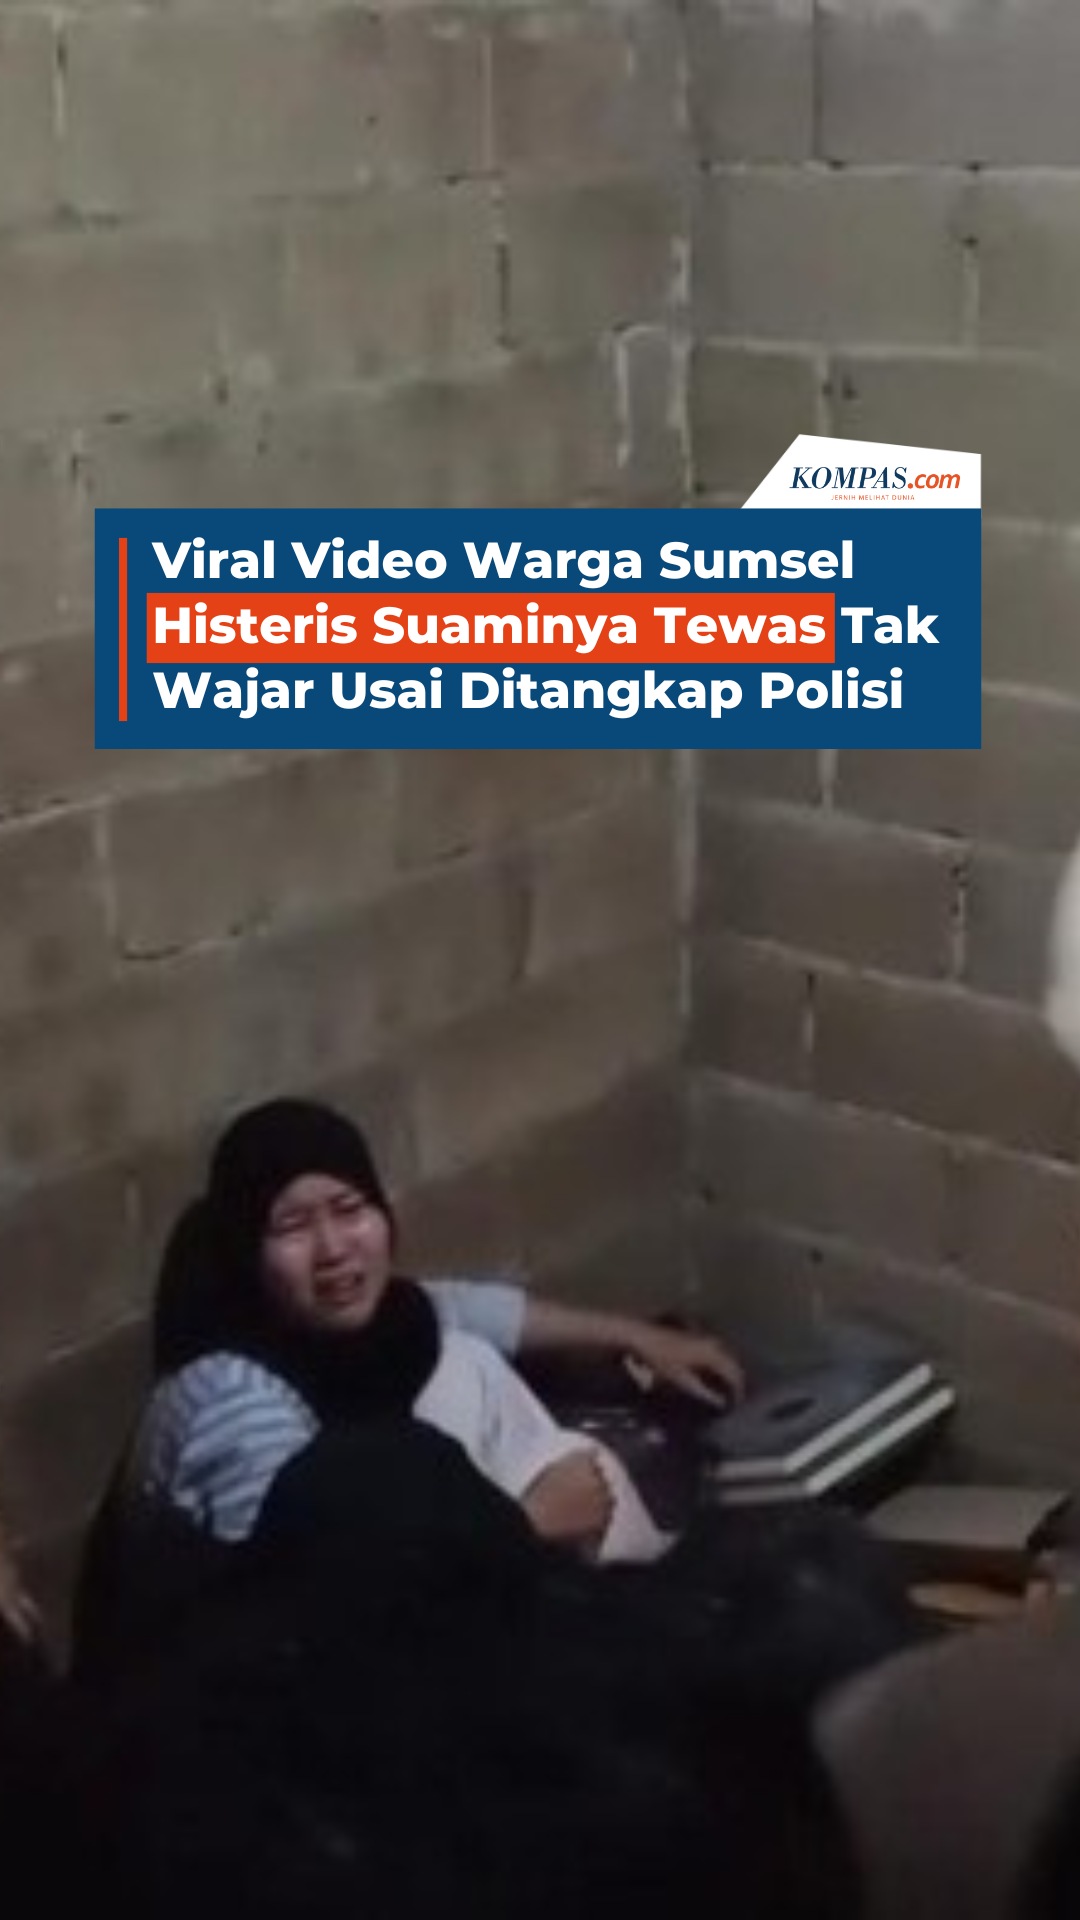 Viral Video Warga Sumsel Histeris Suaminya Tewas Tak Wajar Usai Ditangkap Polisi